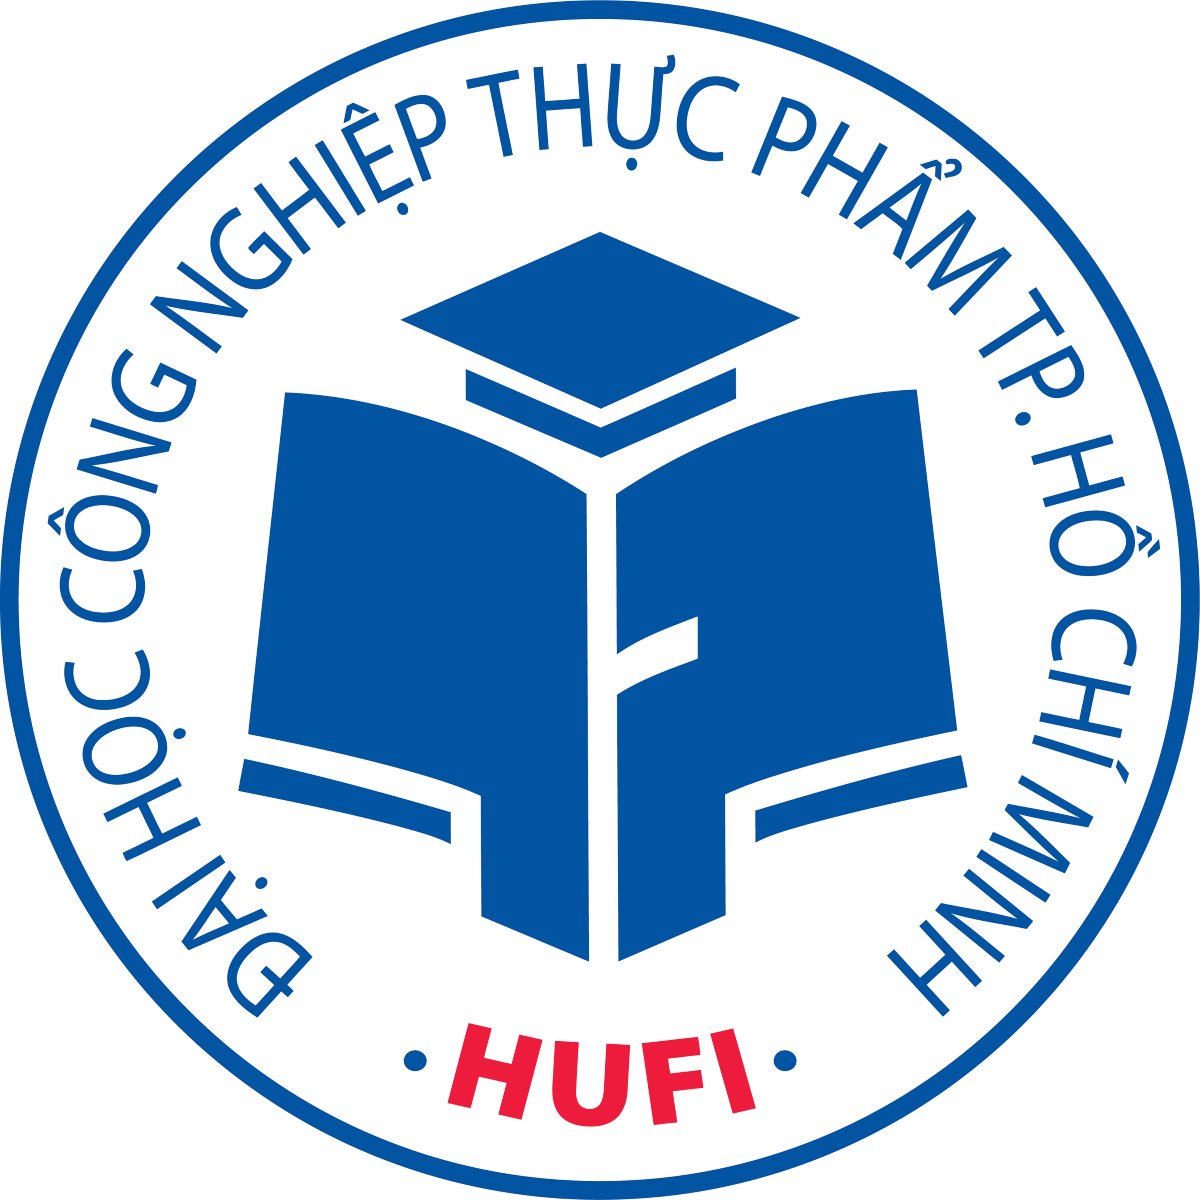 Tải logo HUFI (Đại học Công nghiệp Thực phẩm TP HCM) file vector ...